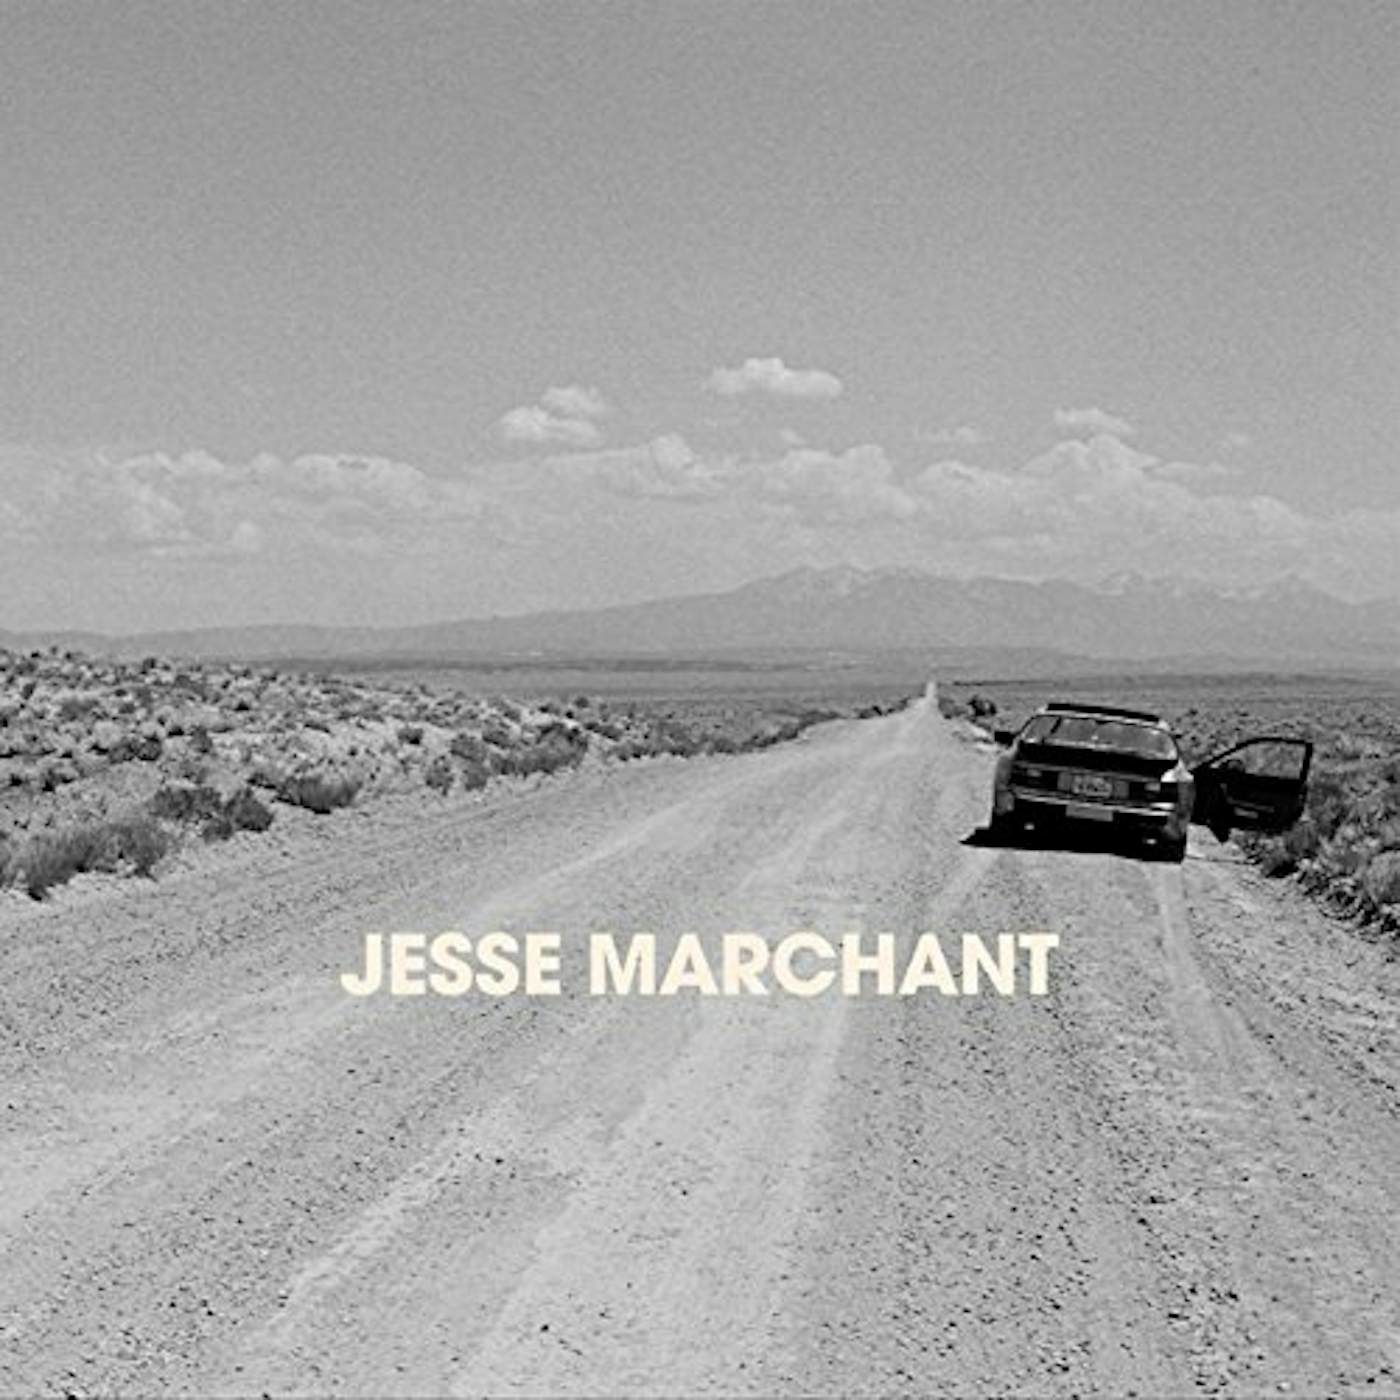 JESSE MARCHANT CD